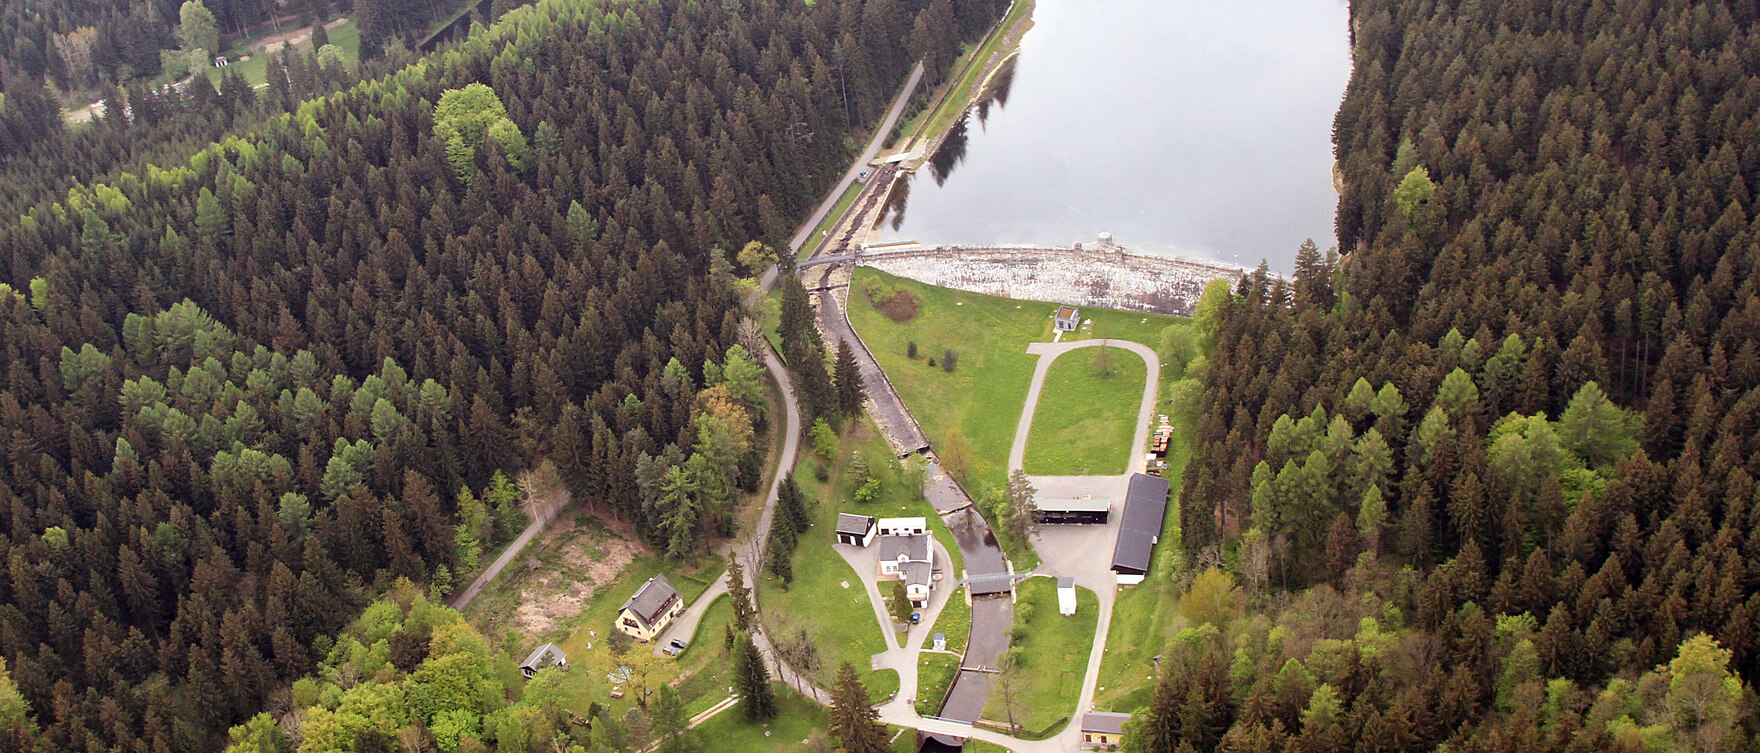 Luftbild von der Talsperre Neunzehnhain I mit Staumiestergebäude